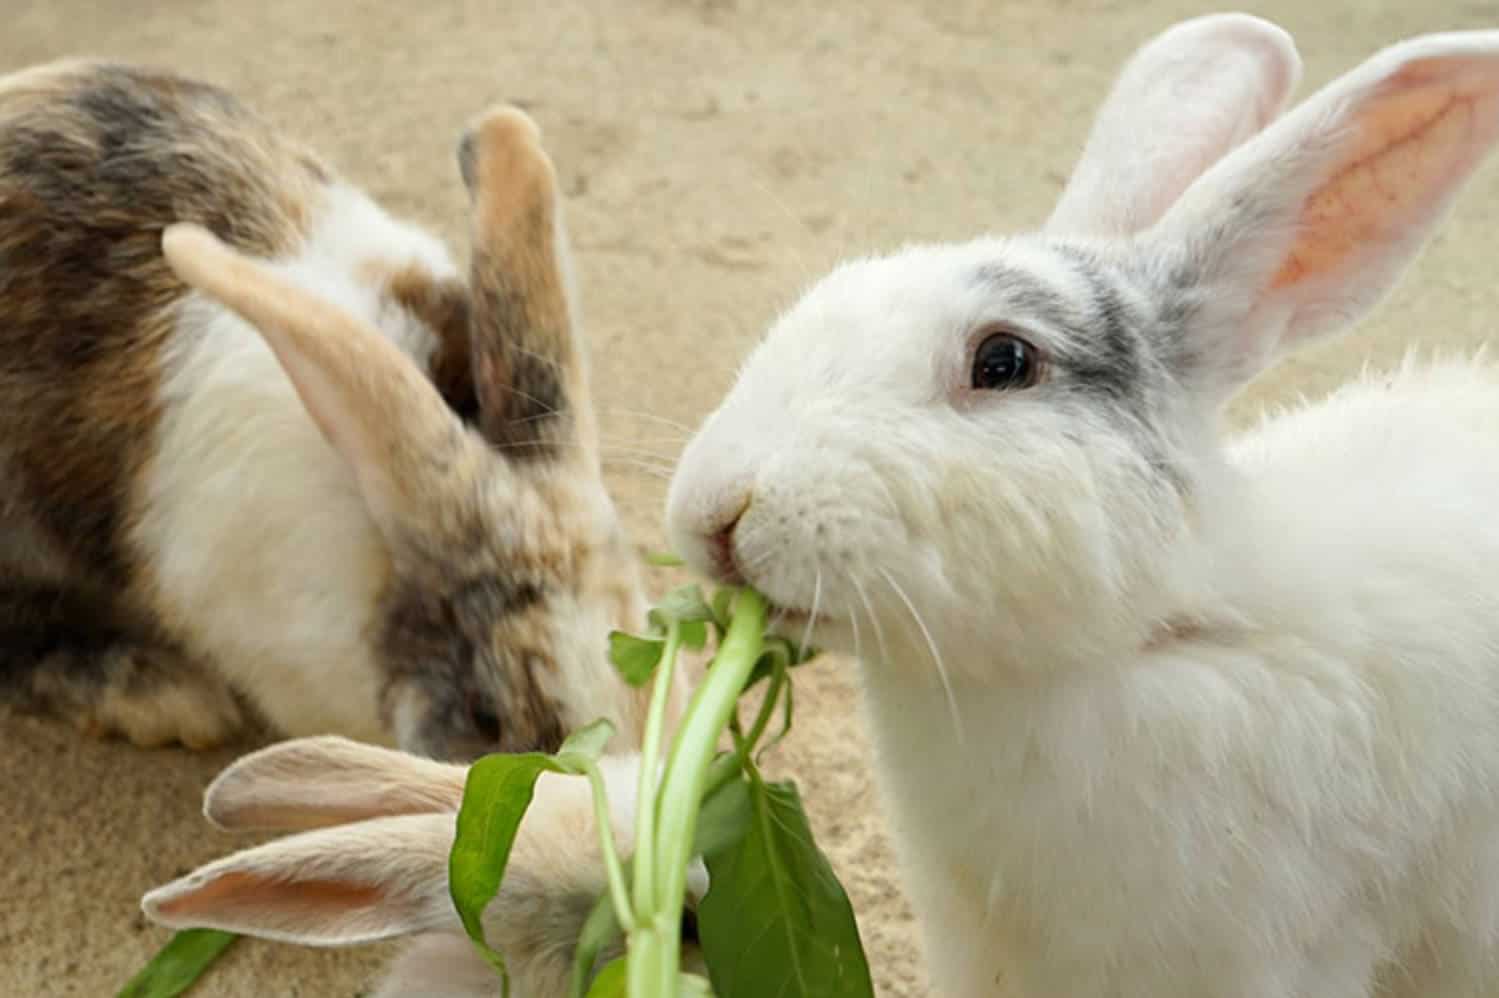 can baby rabbits eat bananas